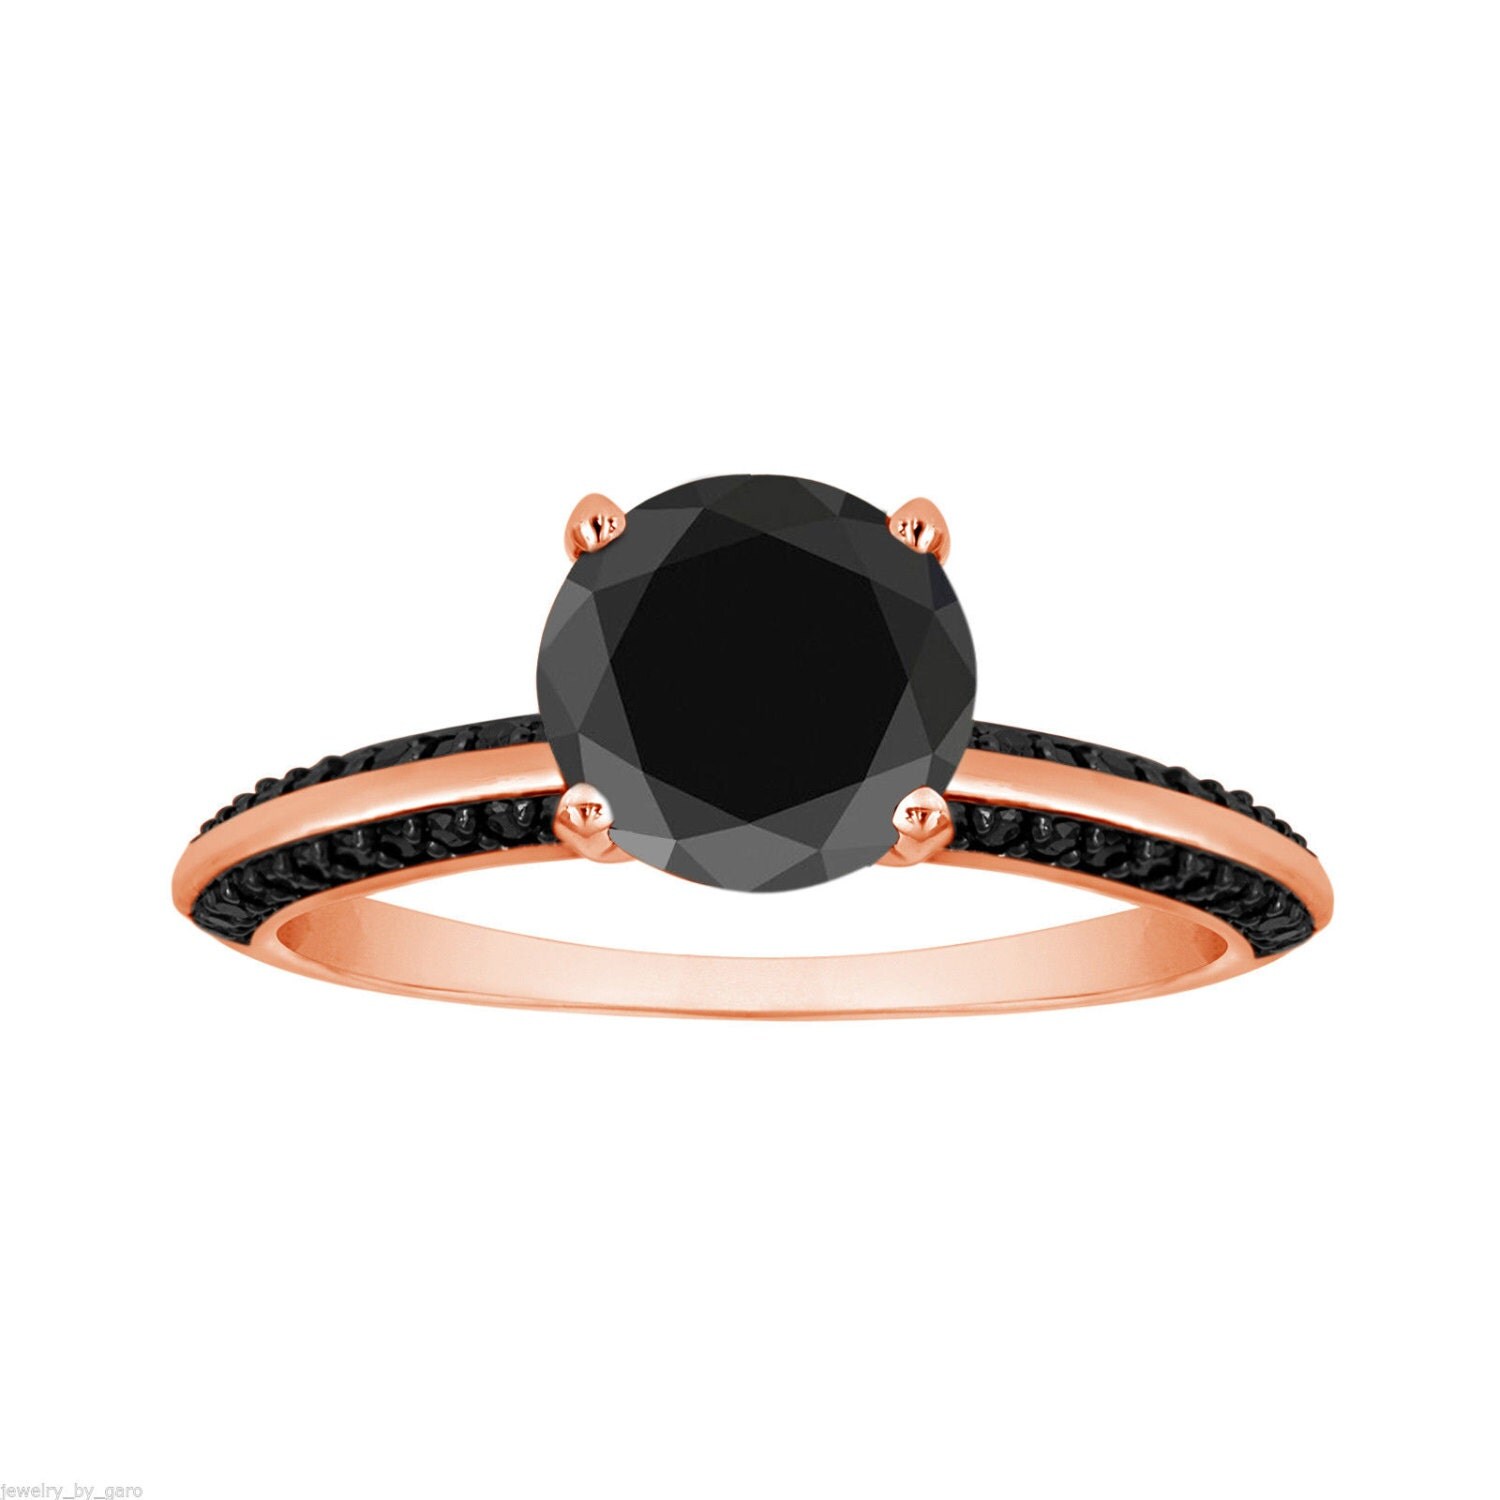 1.79 Carat Fancy Black Diamond Engagement Ring 14K Rose Gold